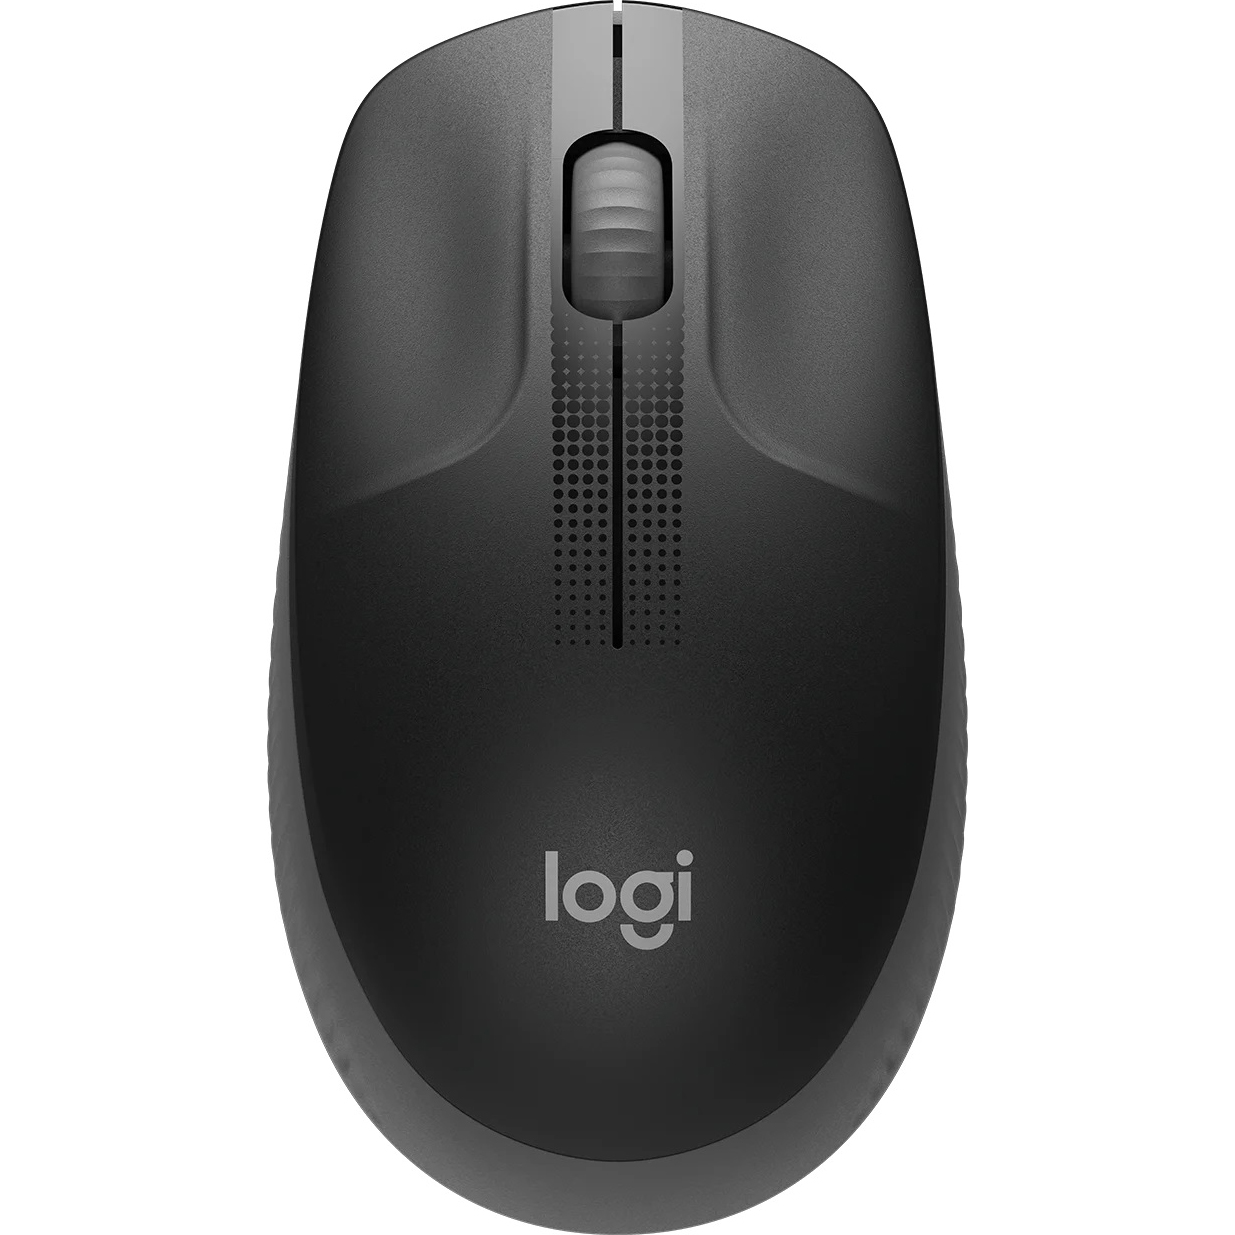 Компьютерная мышь Logitech M190 Grey (910-005906)